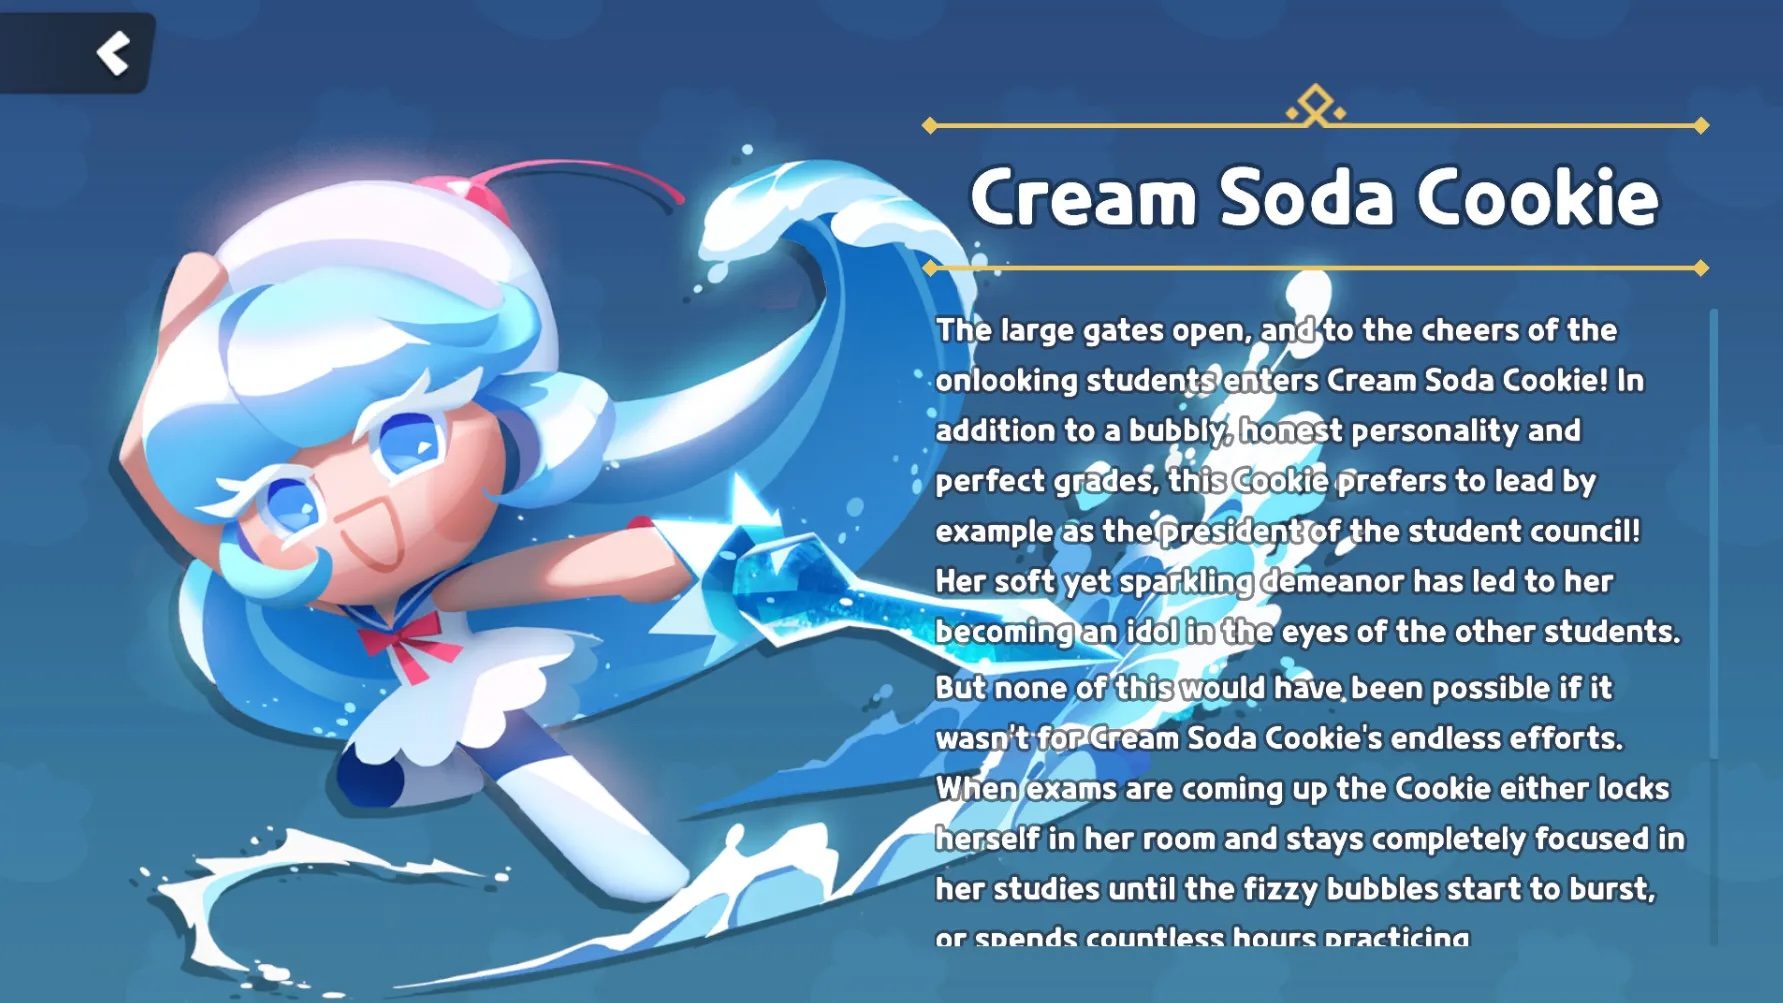 CookieRun: Tower of Adventures - Cách có được nhân vật Cream Soda Cookie